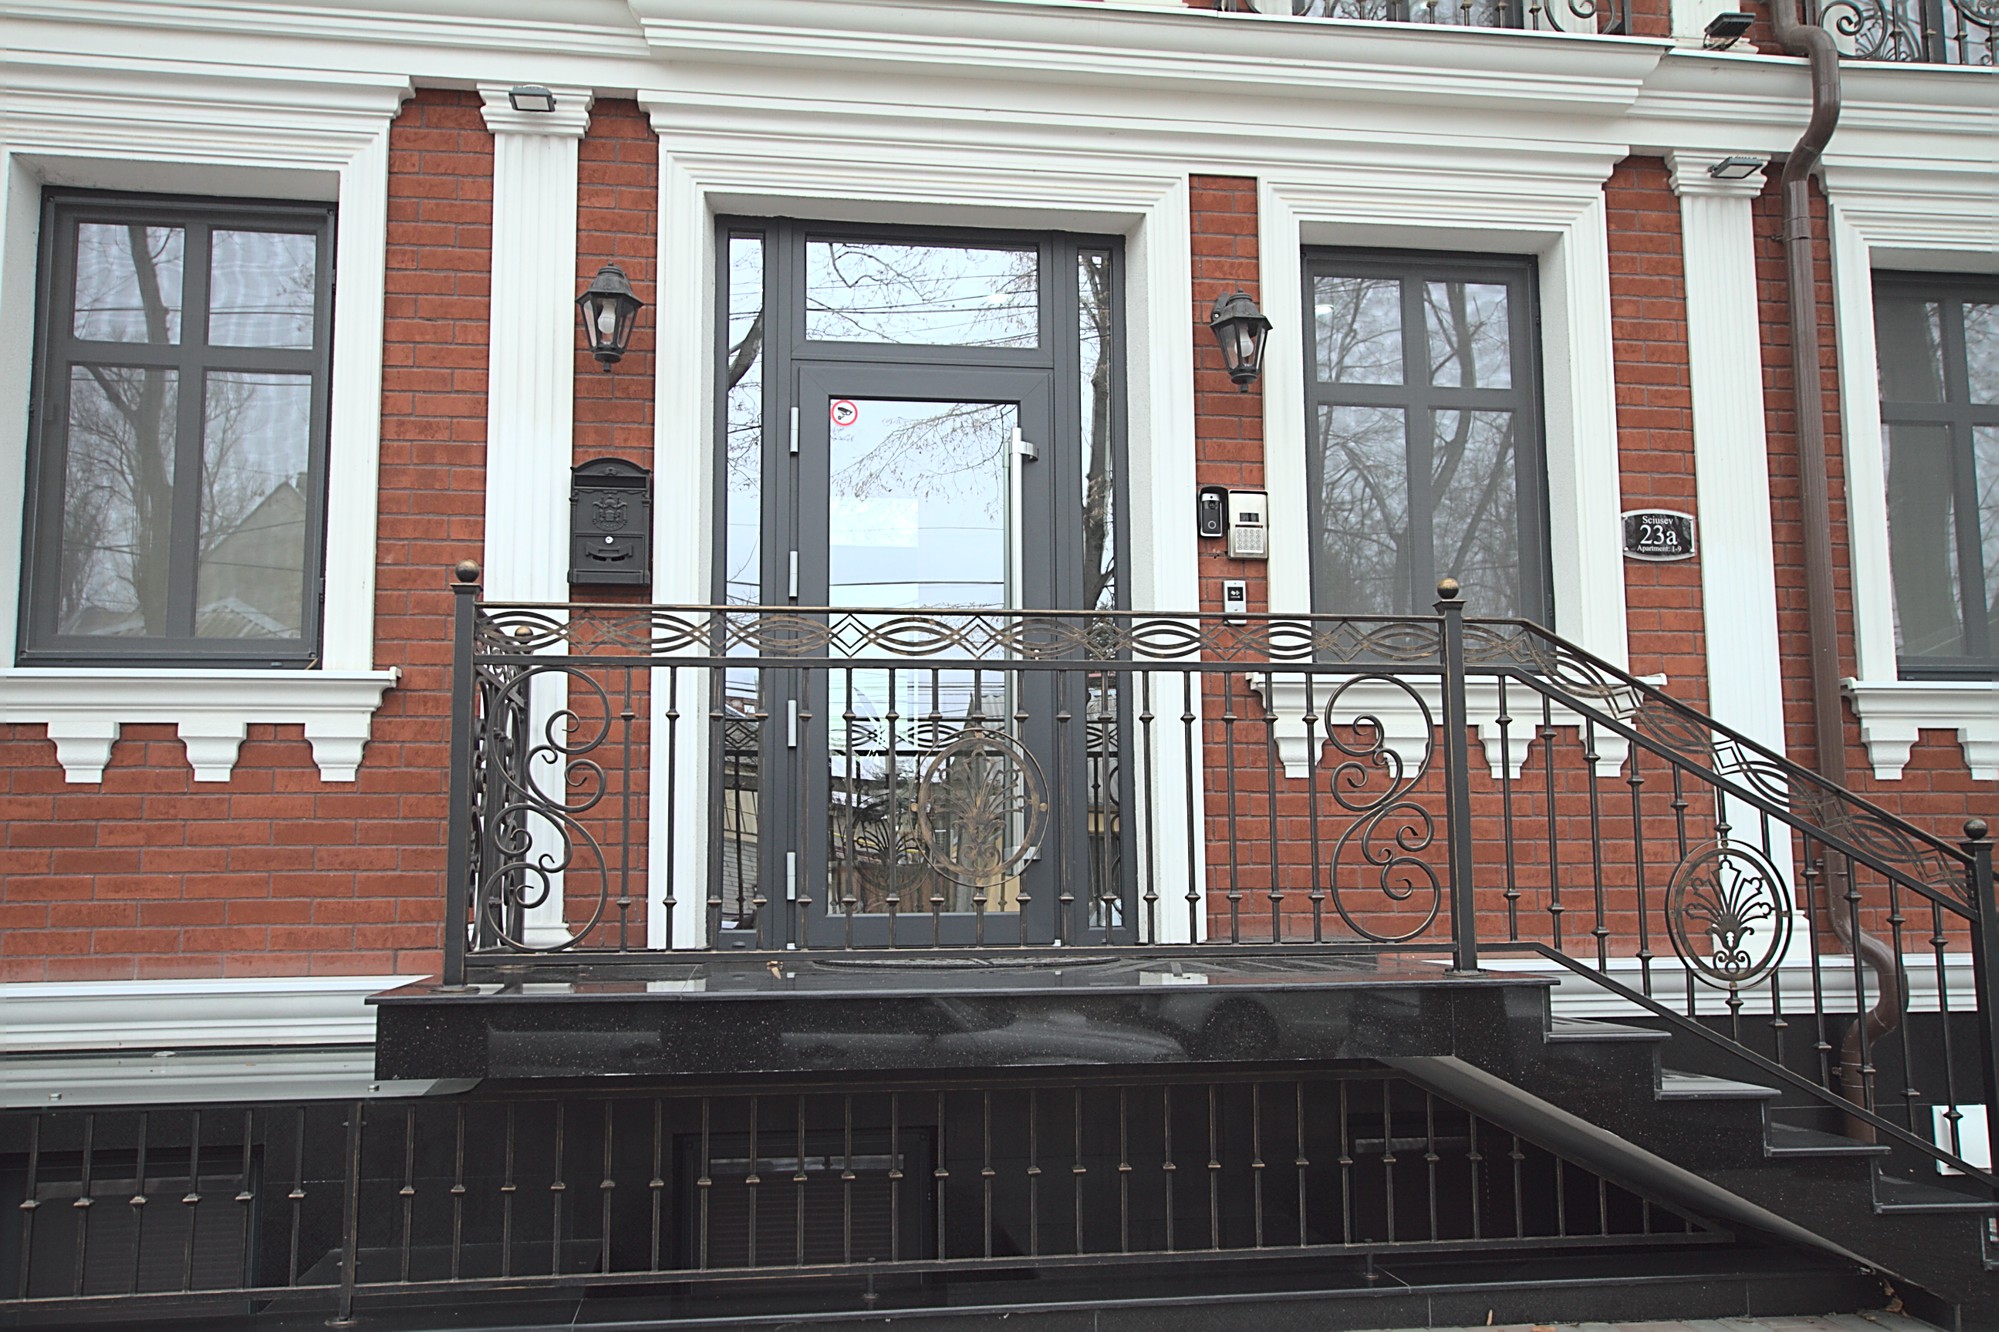 2 habitaciones en alquiler en Chisinau, Sciusev 23A